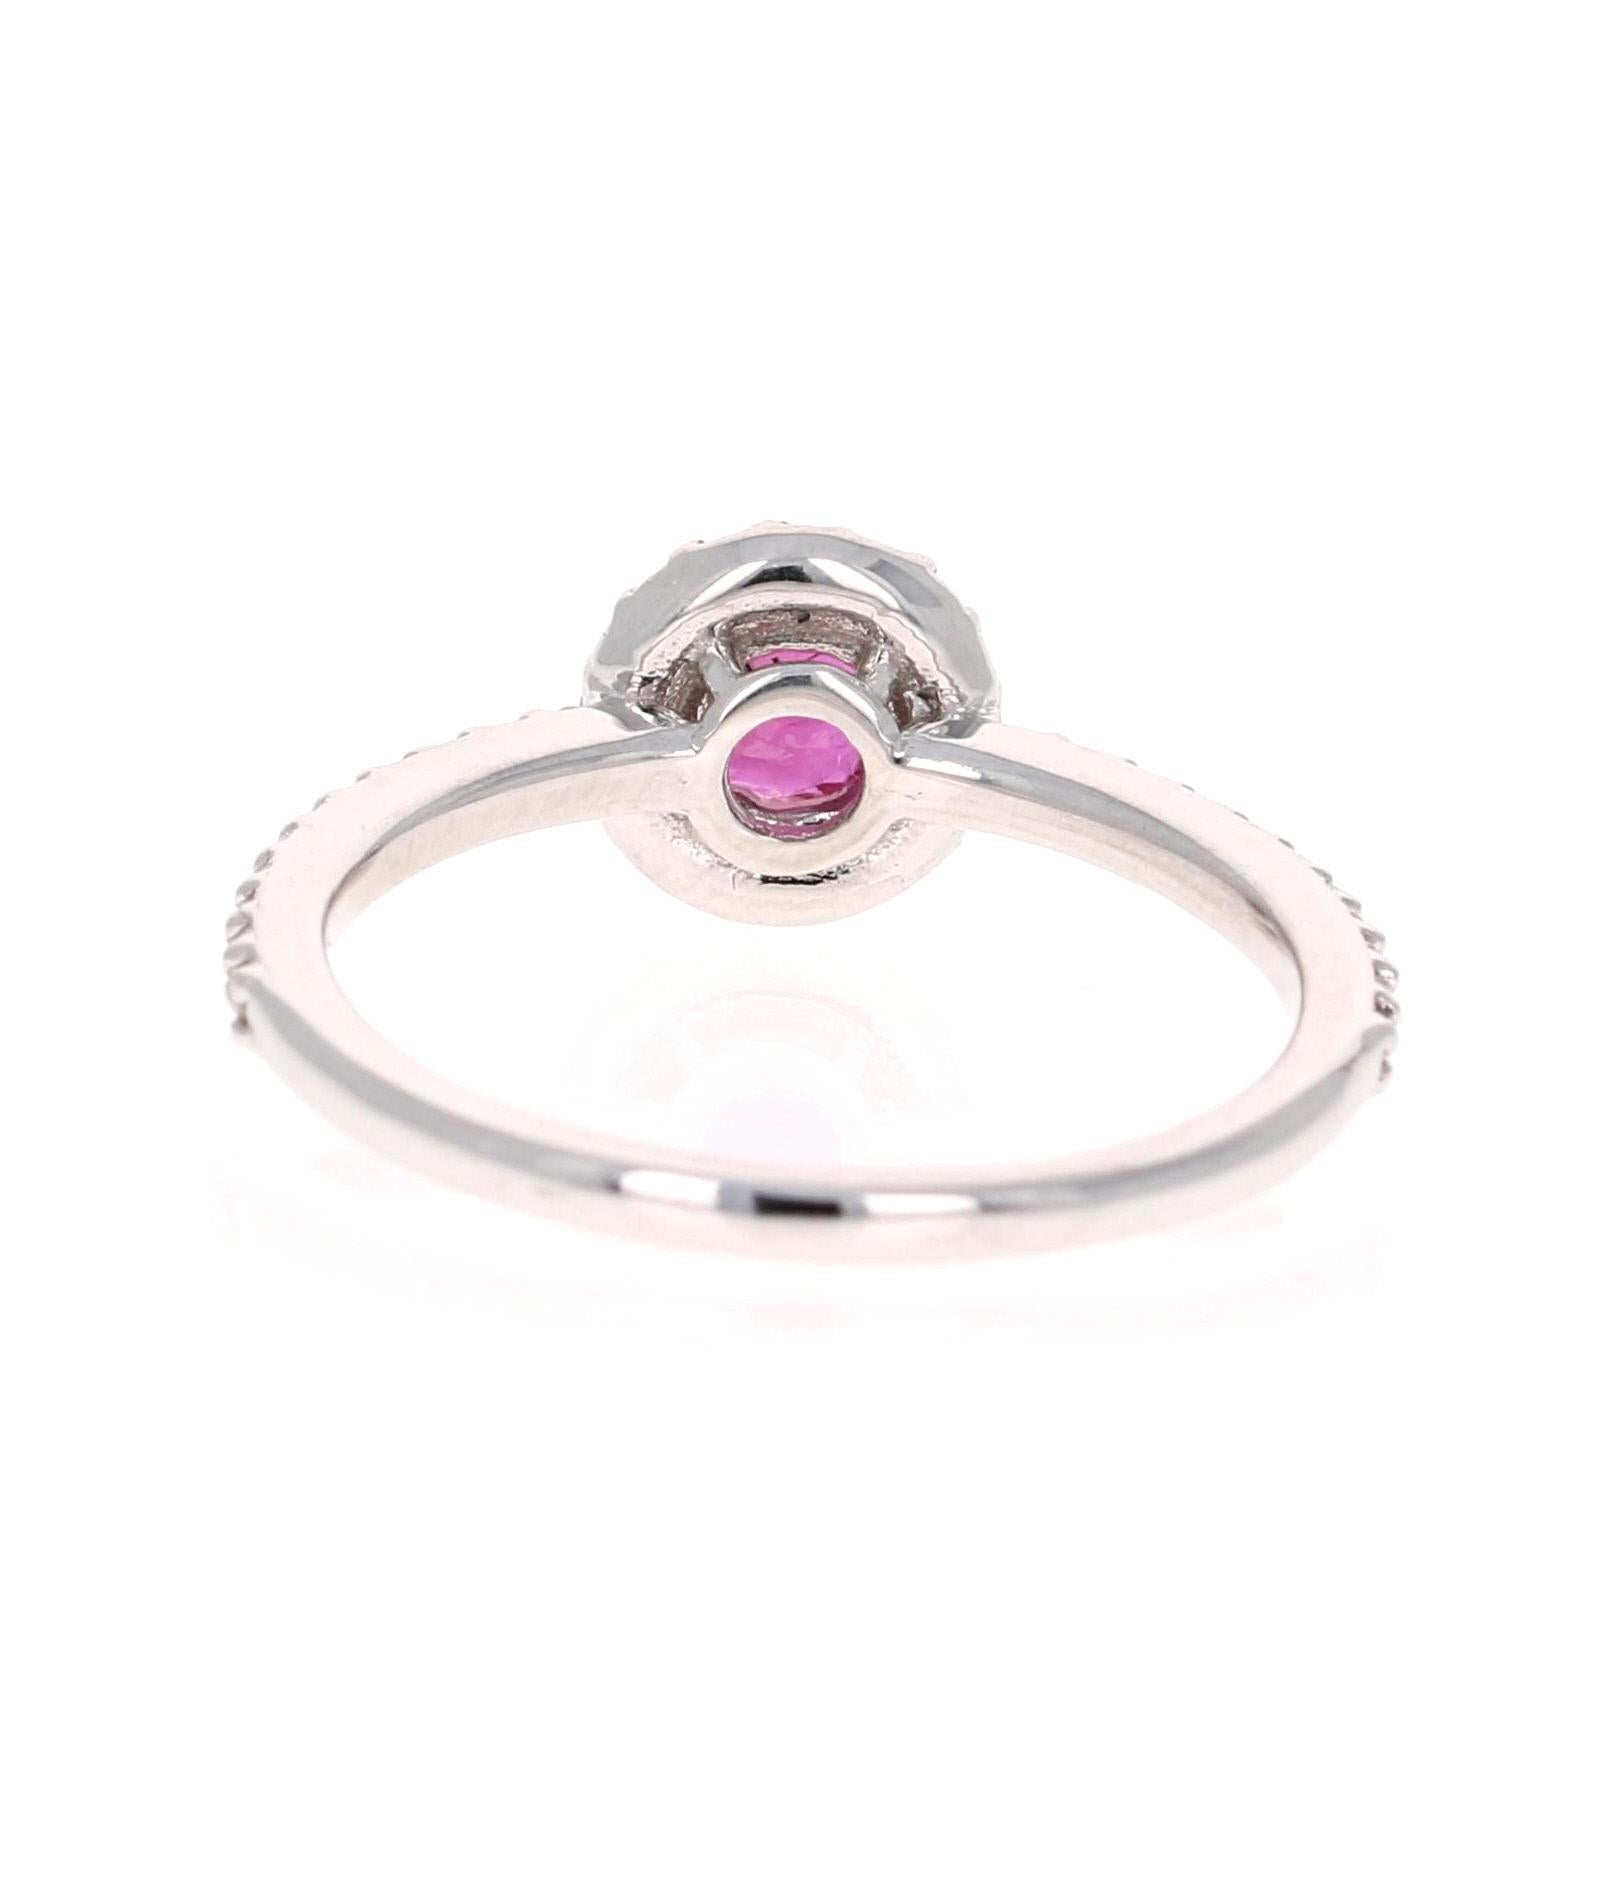 Round Cut 1.02 Carat Ruby Diamond 14 Karat White Gold Engagement Ring